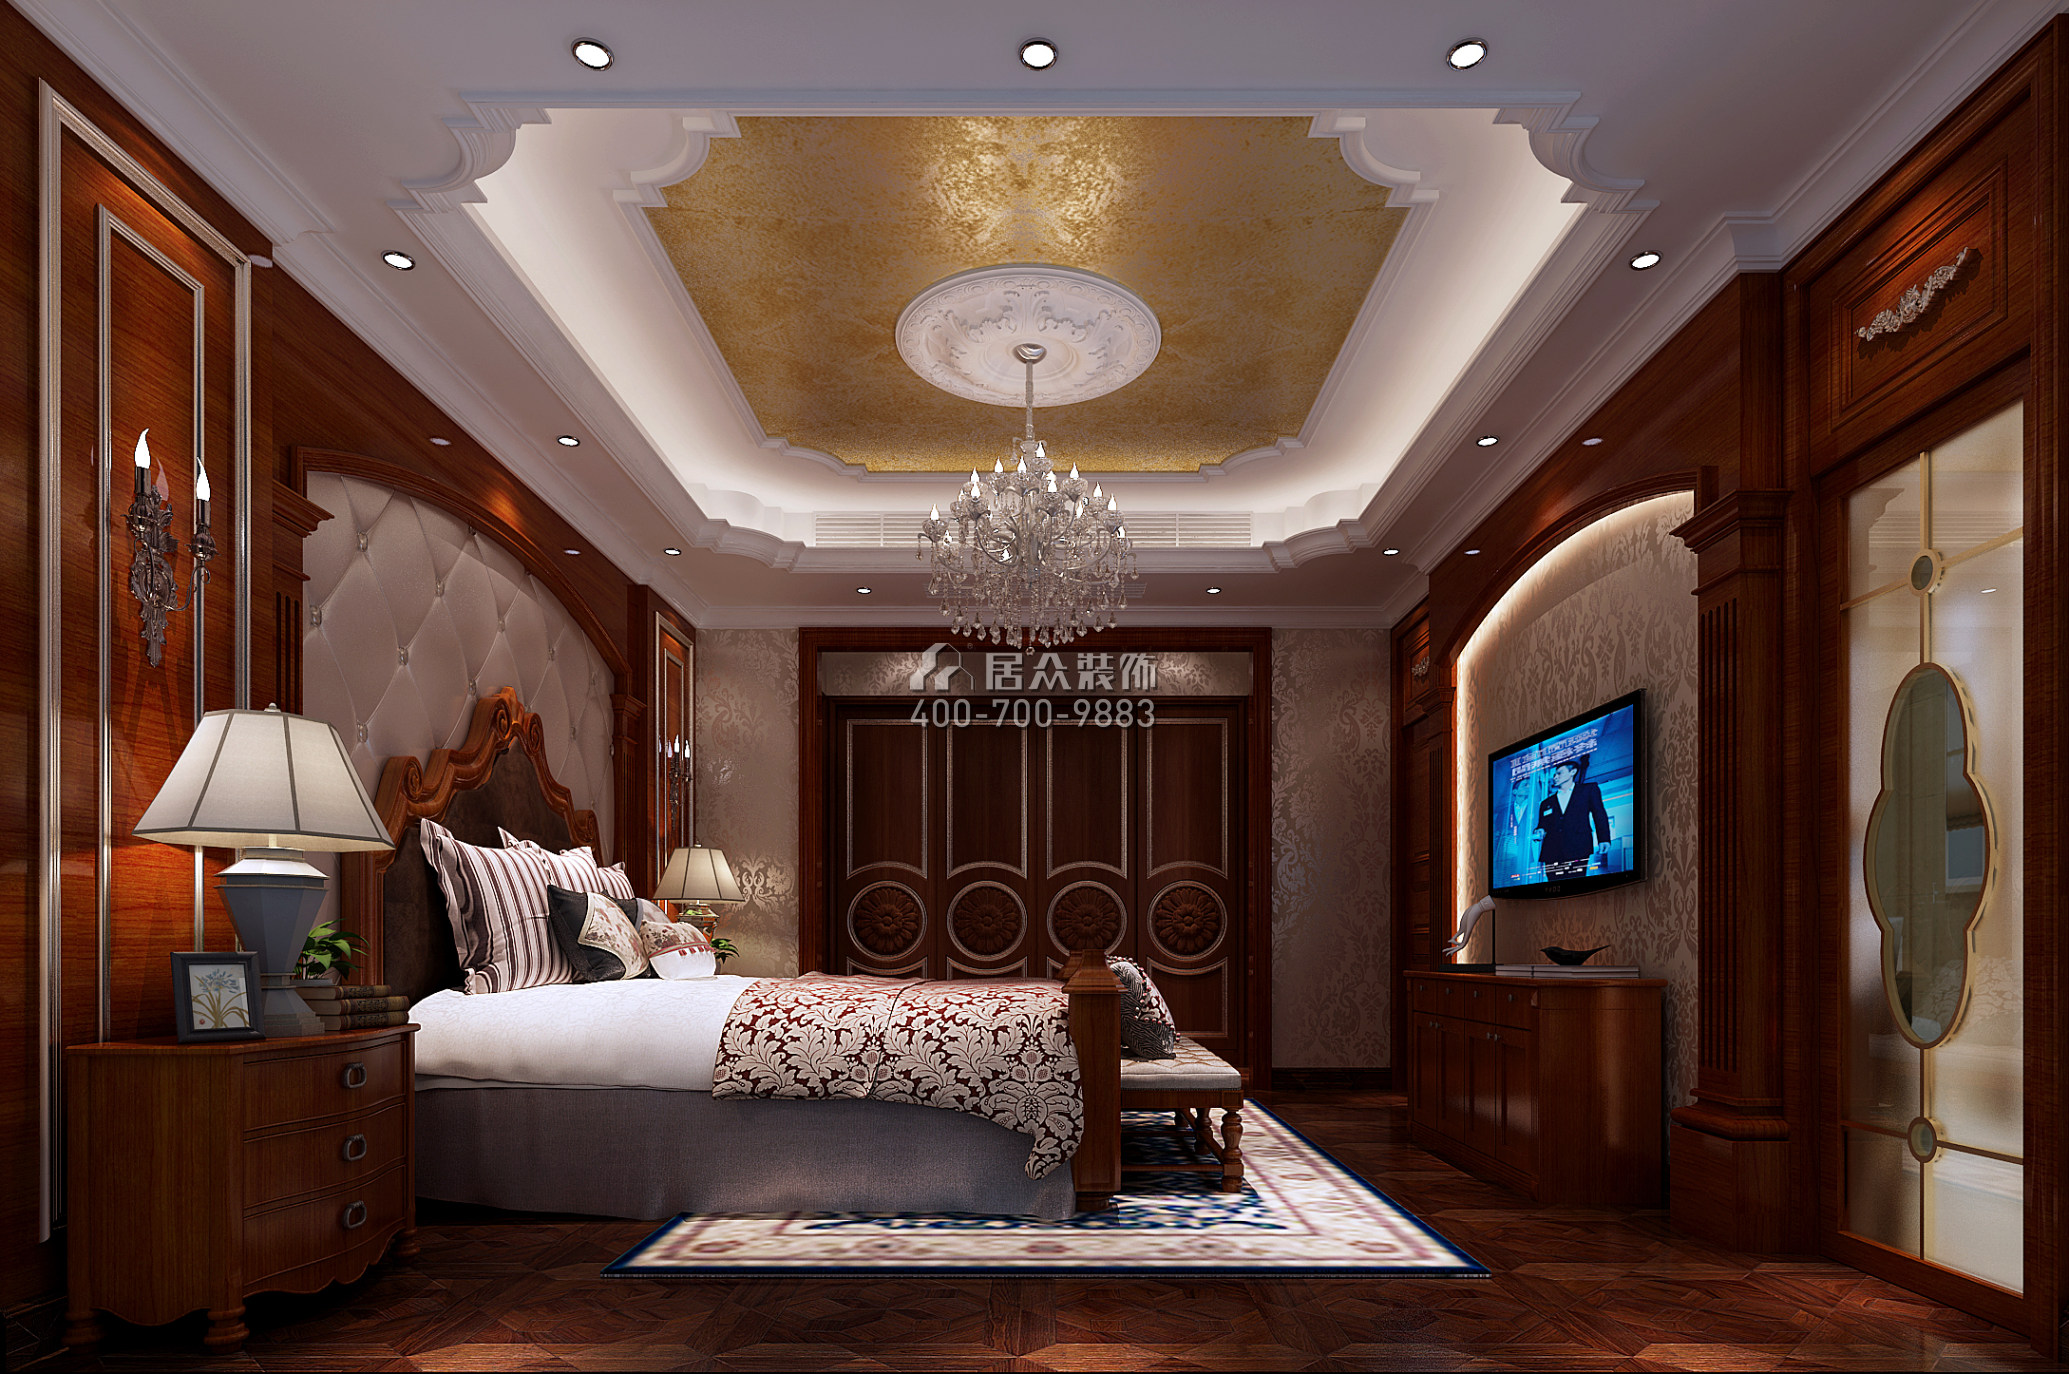 雅宝新城280平方米新古典风格别墅户型卧室装修效果图